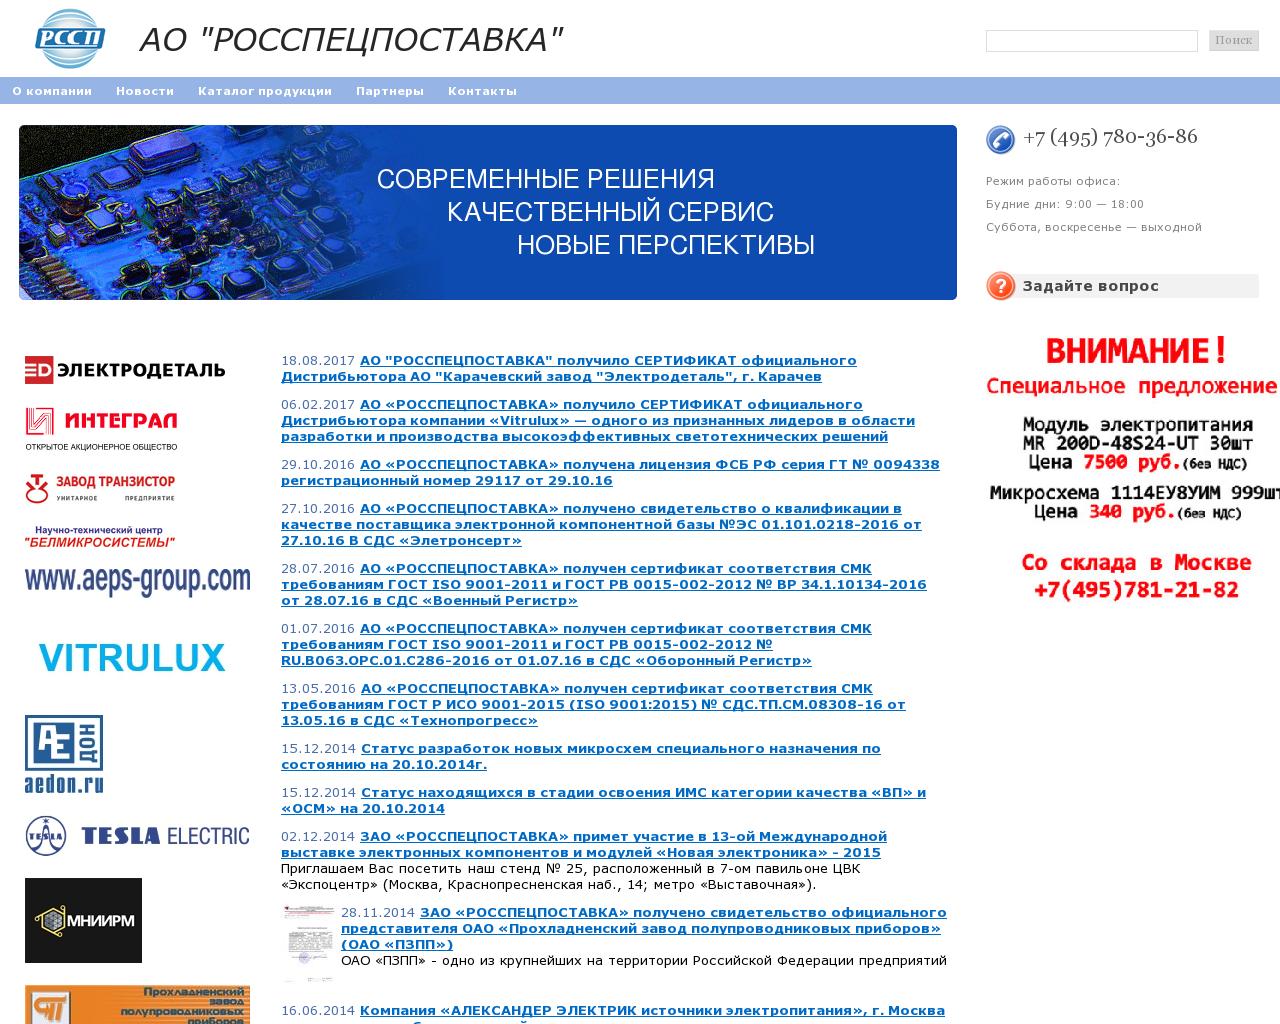 Изображение сайта rccp.ru в разрешении 1280x1024